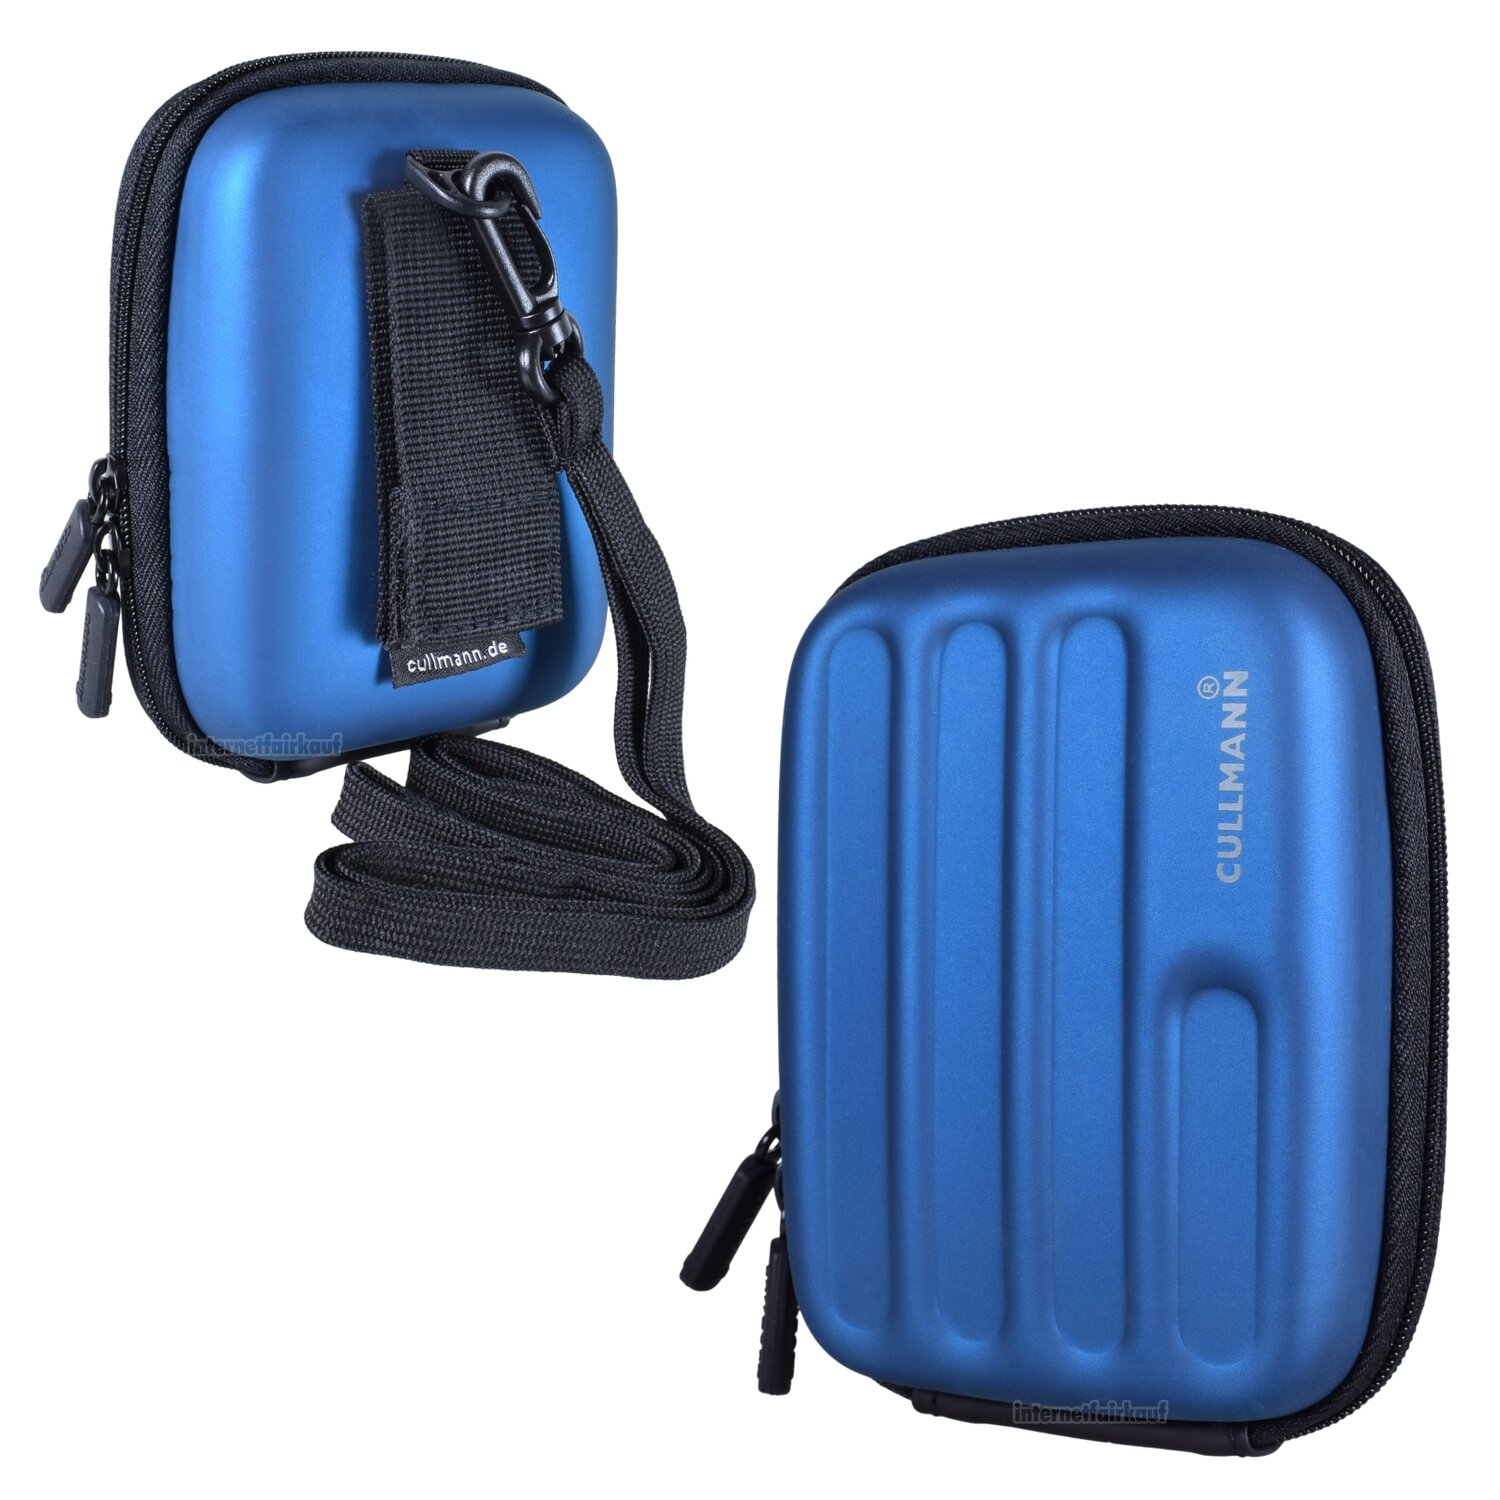 Hardcase Kameratasche passend für Rollei Powerflex 550